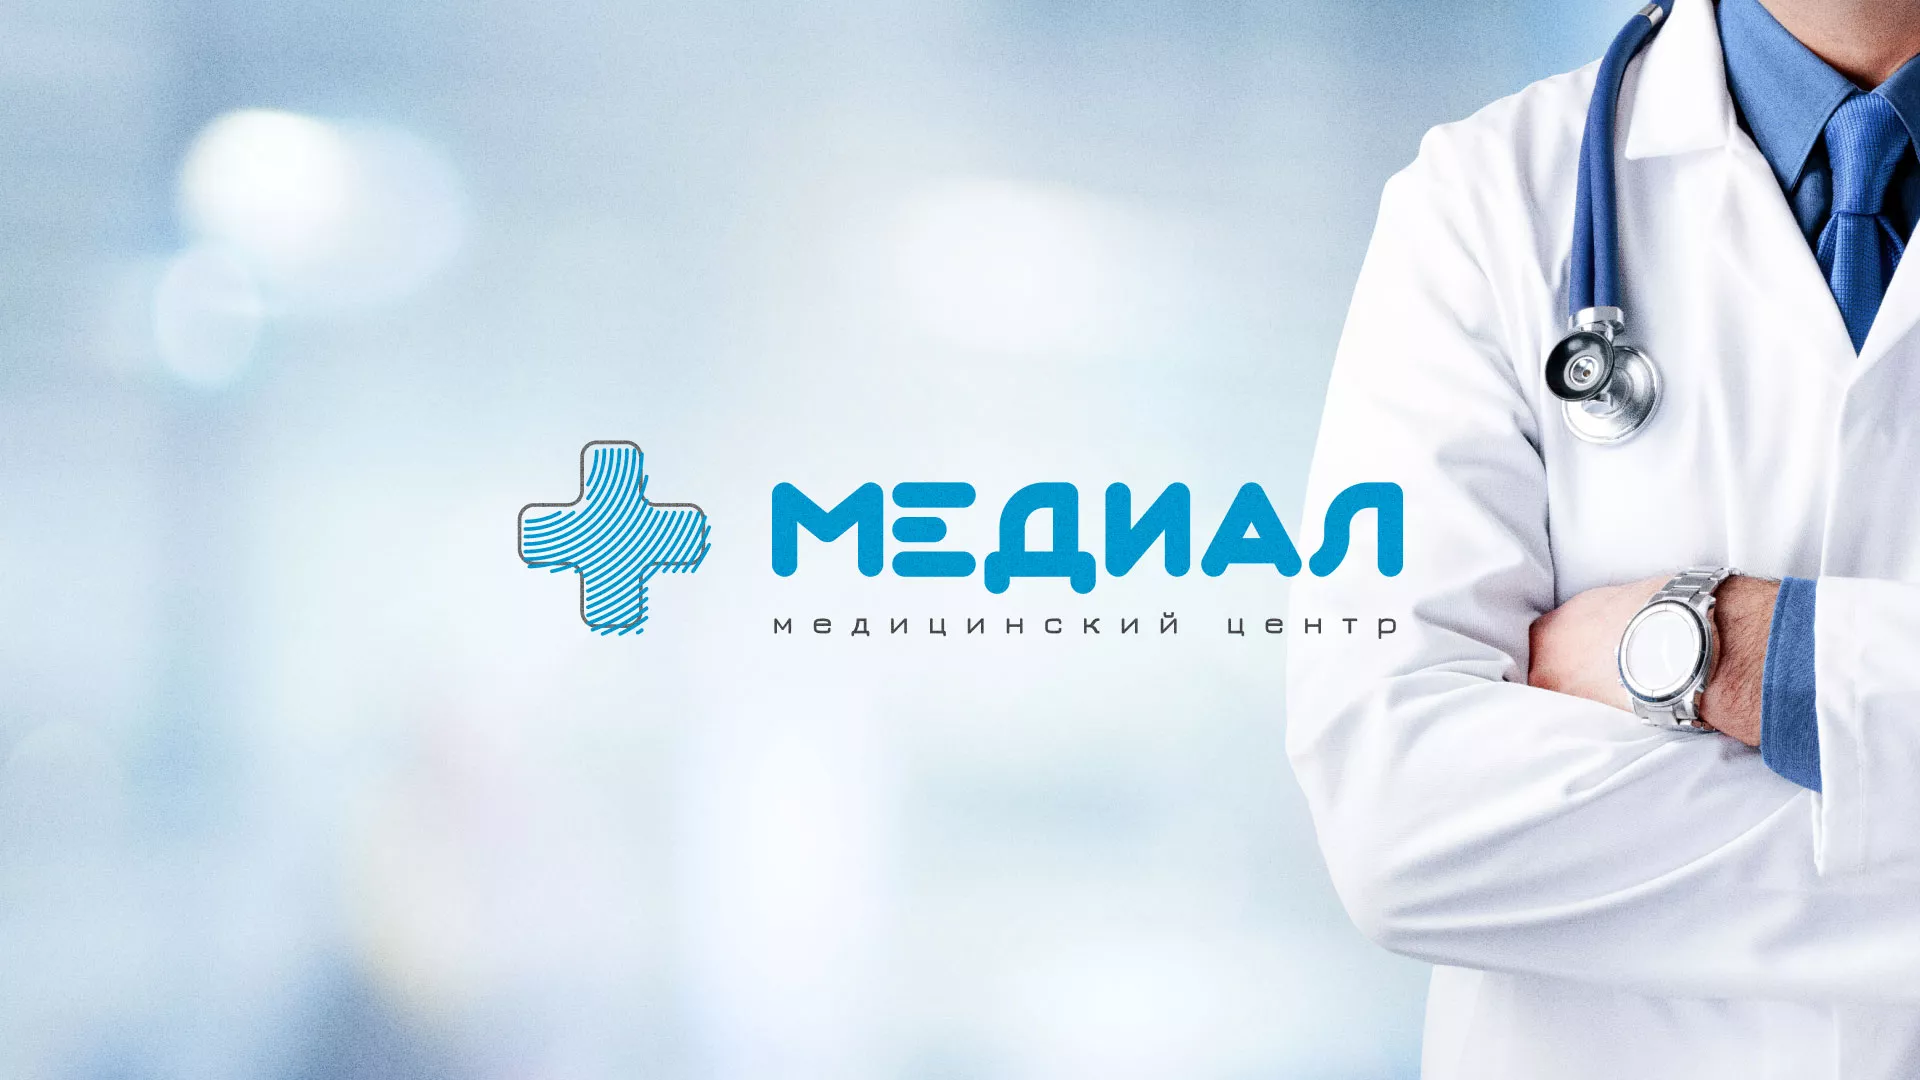 Создание сайта для медицинского центра «Медиал» в Шенкурске